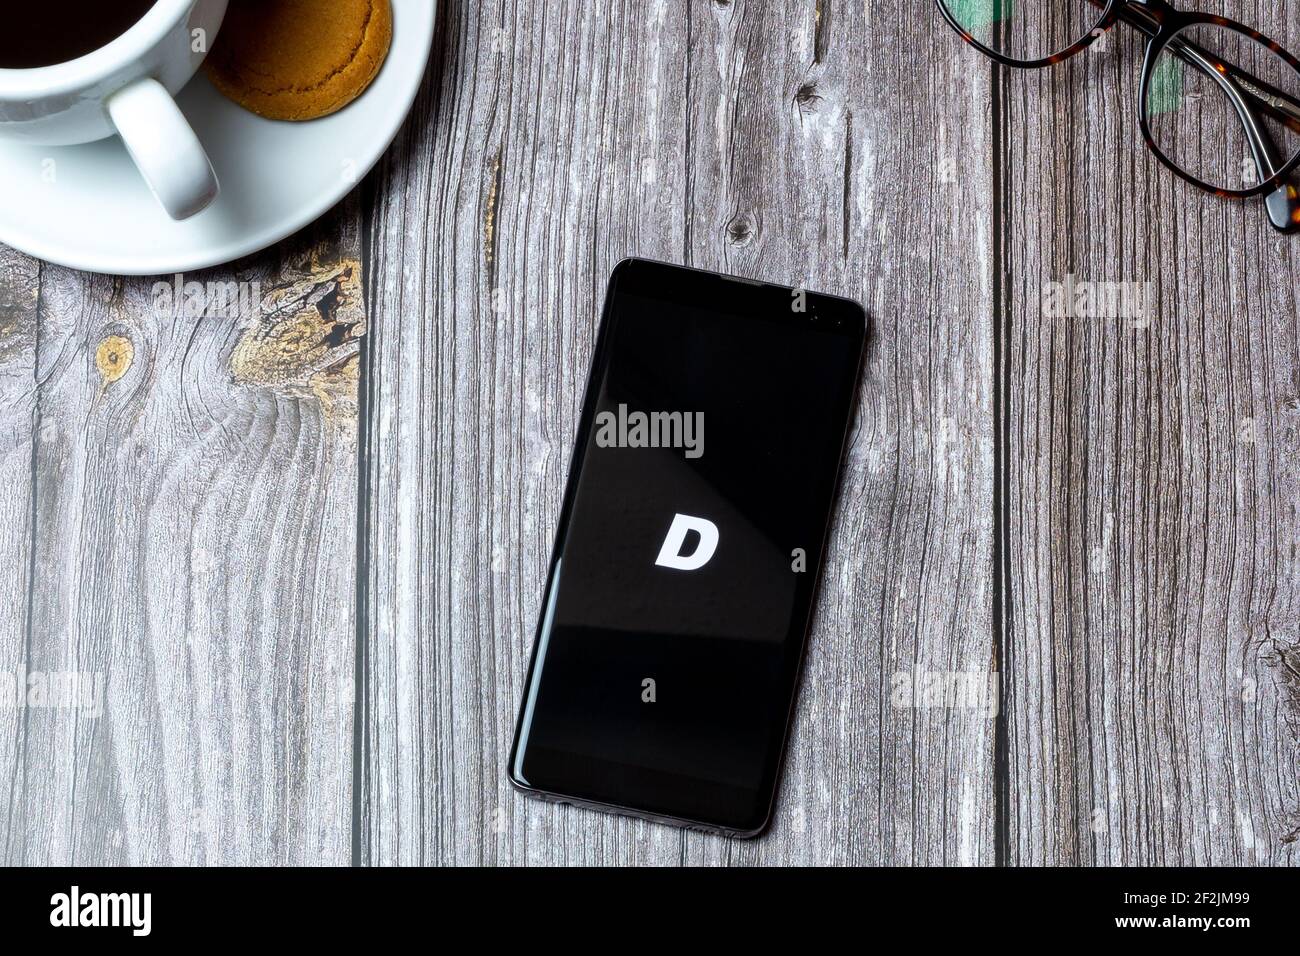 Un téléphone portable ou mobile posé sur un bois Table avec l'application Droplist streetwear ouverte à l'écran Banque D'Images